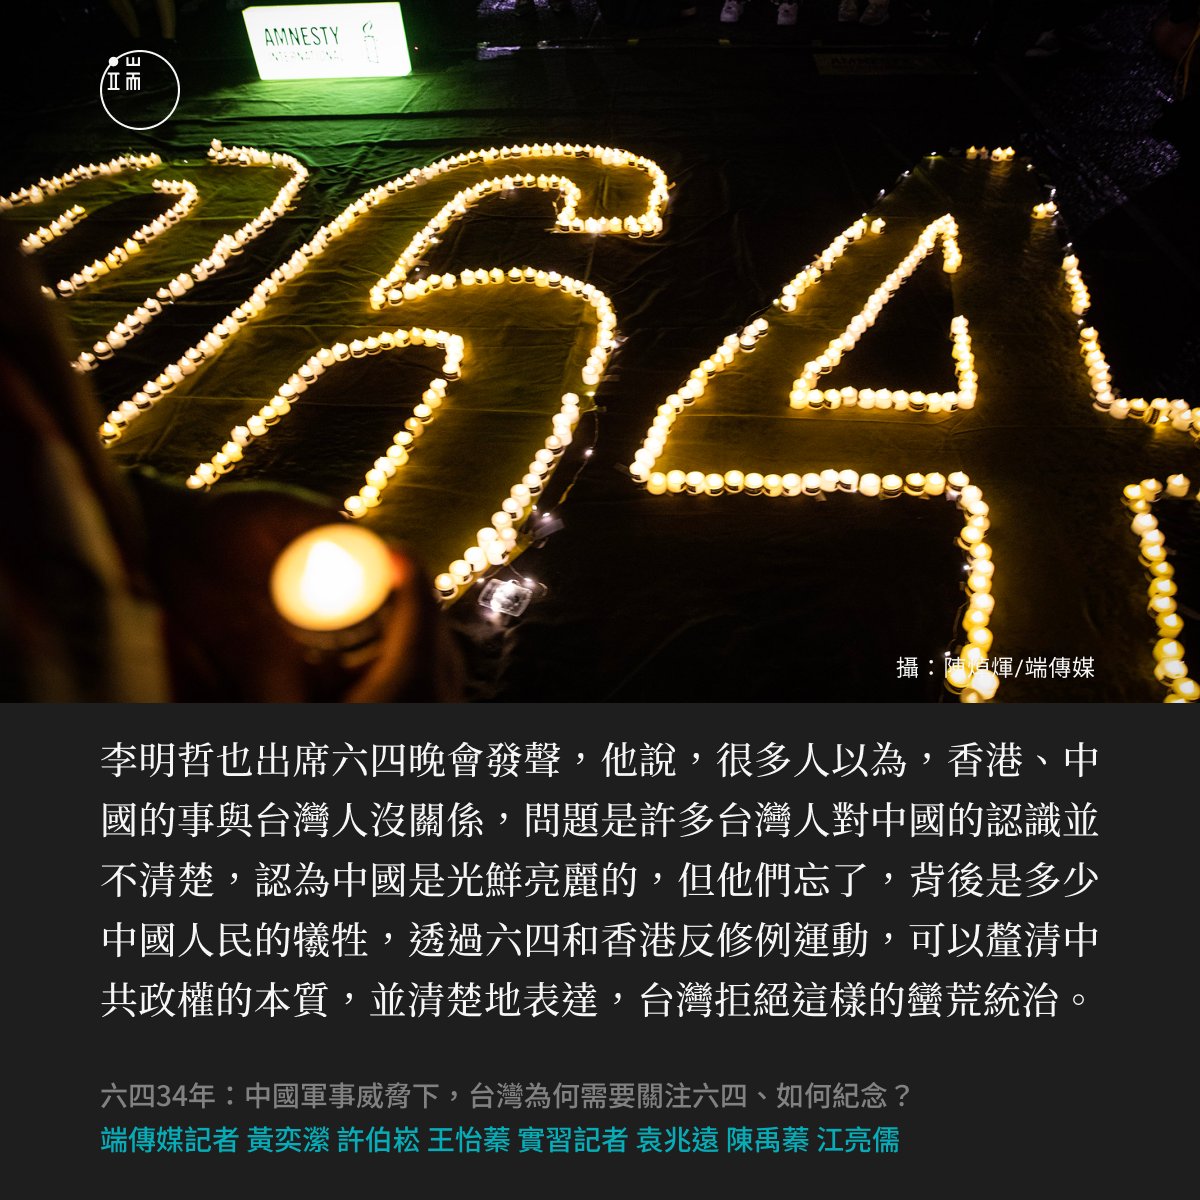 【對台灣而言，紀念六四也是一種自我提醒】 「很多人以為，香港、中國的事與台灣人沒關係，問題是許多台灣人對中國的認識並不清楚，認為中國是光鮮亮麗的，但他們忘了，背後是多少中國人民的犧牲。」 關注六四對台灣而言不只是悼念，也是在提醒過去發生的慘痛經歷並不遙遠。